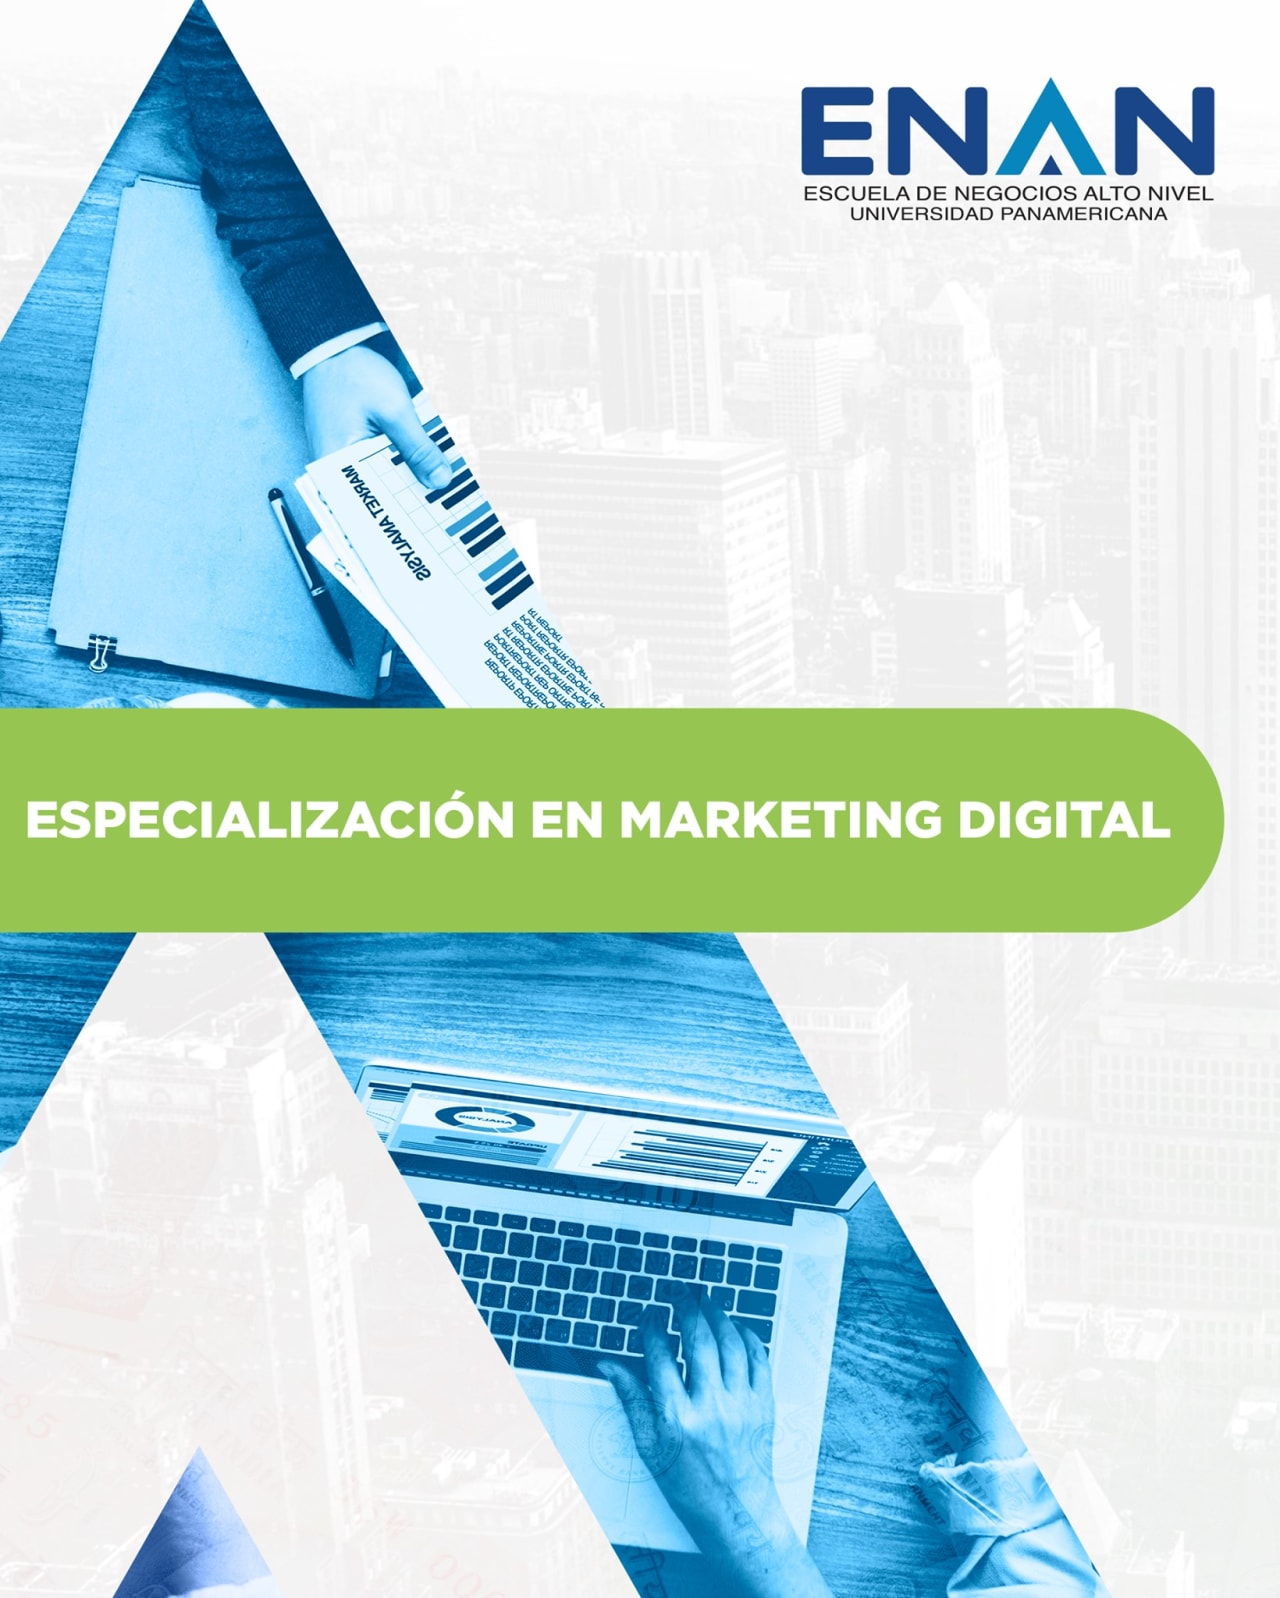 Escuela de Negocios Alto Nivel - Universidad Panamericana de Guatemala デジタルマーケティングの専門分野